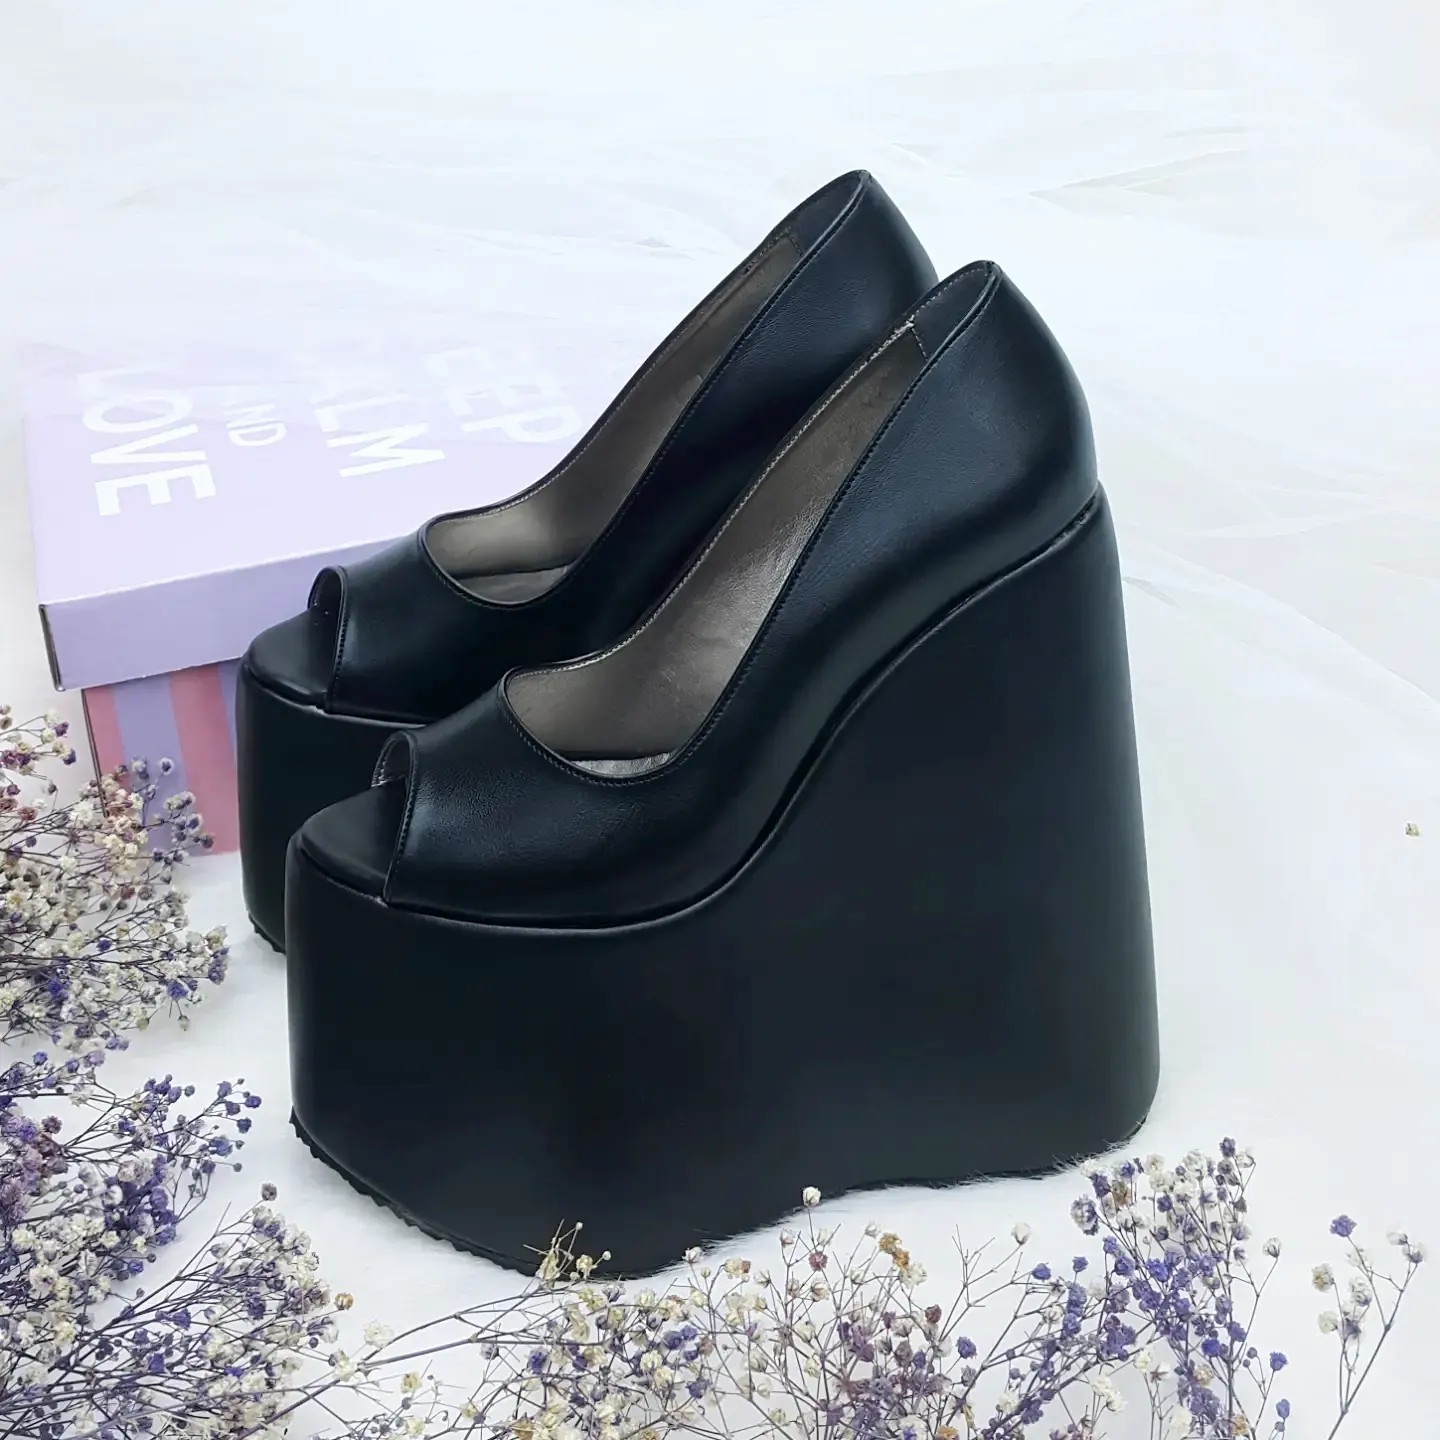 Ankle Strap Black Patent Hidden Platform | Tajna Shoes – Tajna Club